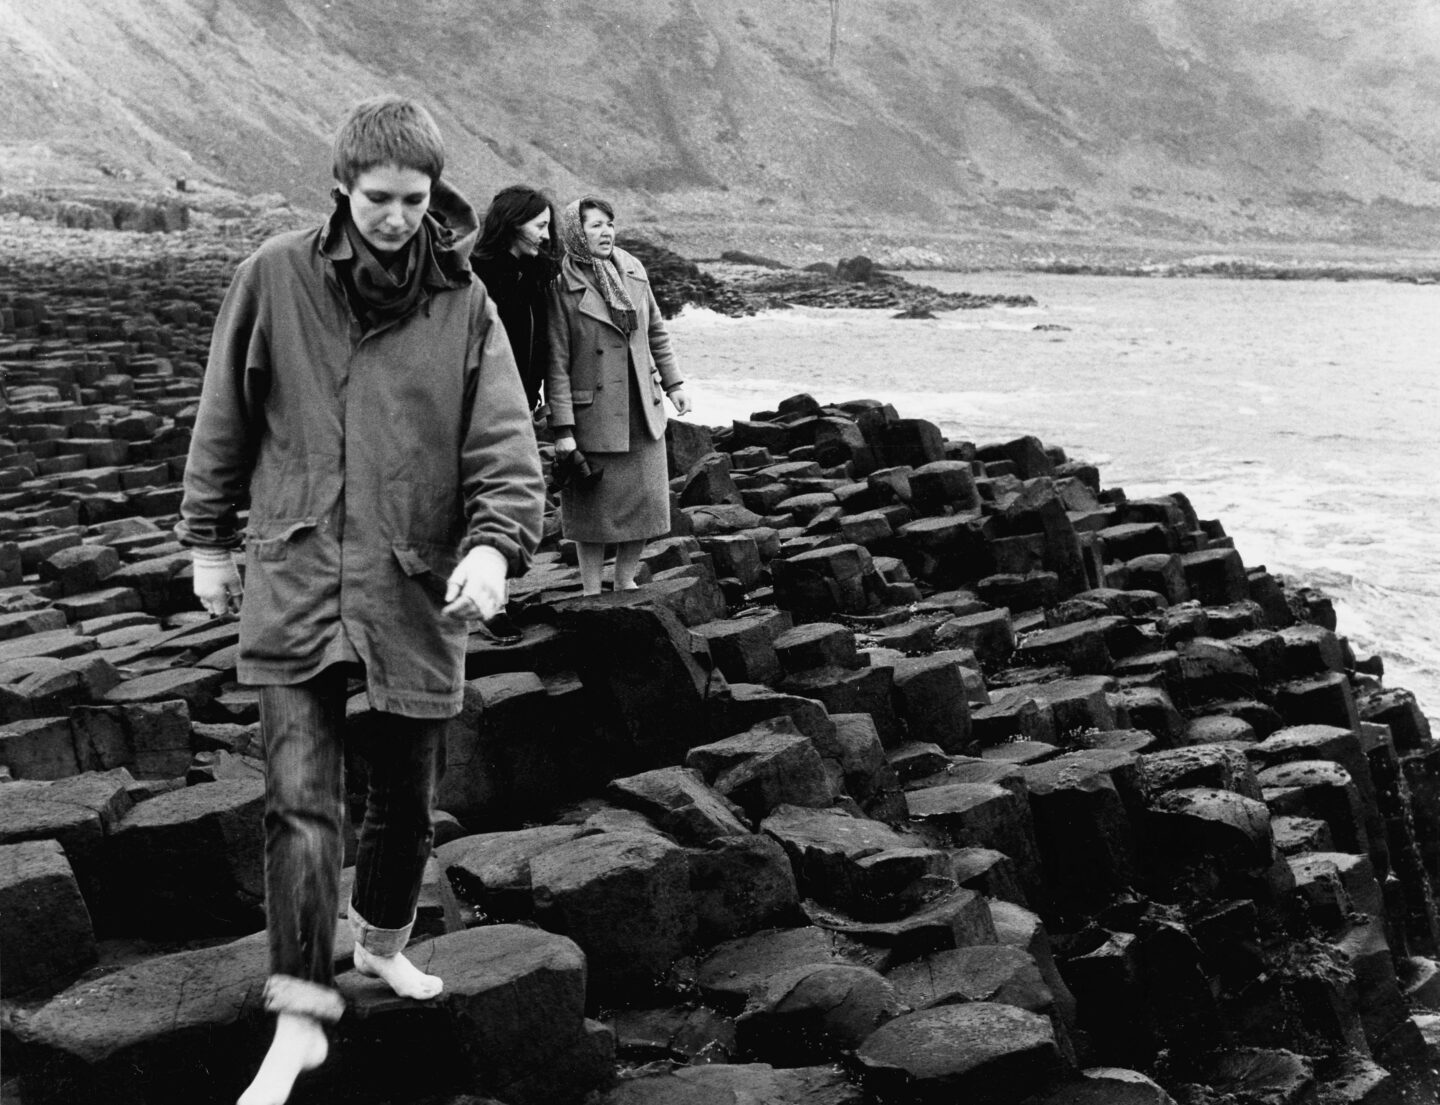 Maeve-elokuvan päähenkilöt kävelevät kivisellä rannalla mustavalkokuvassa.